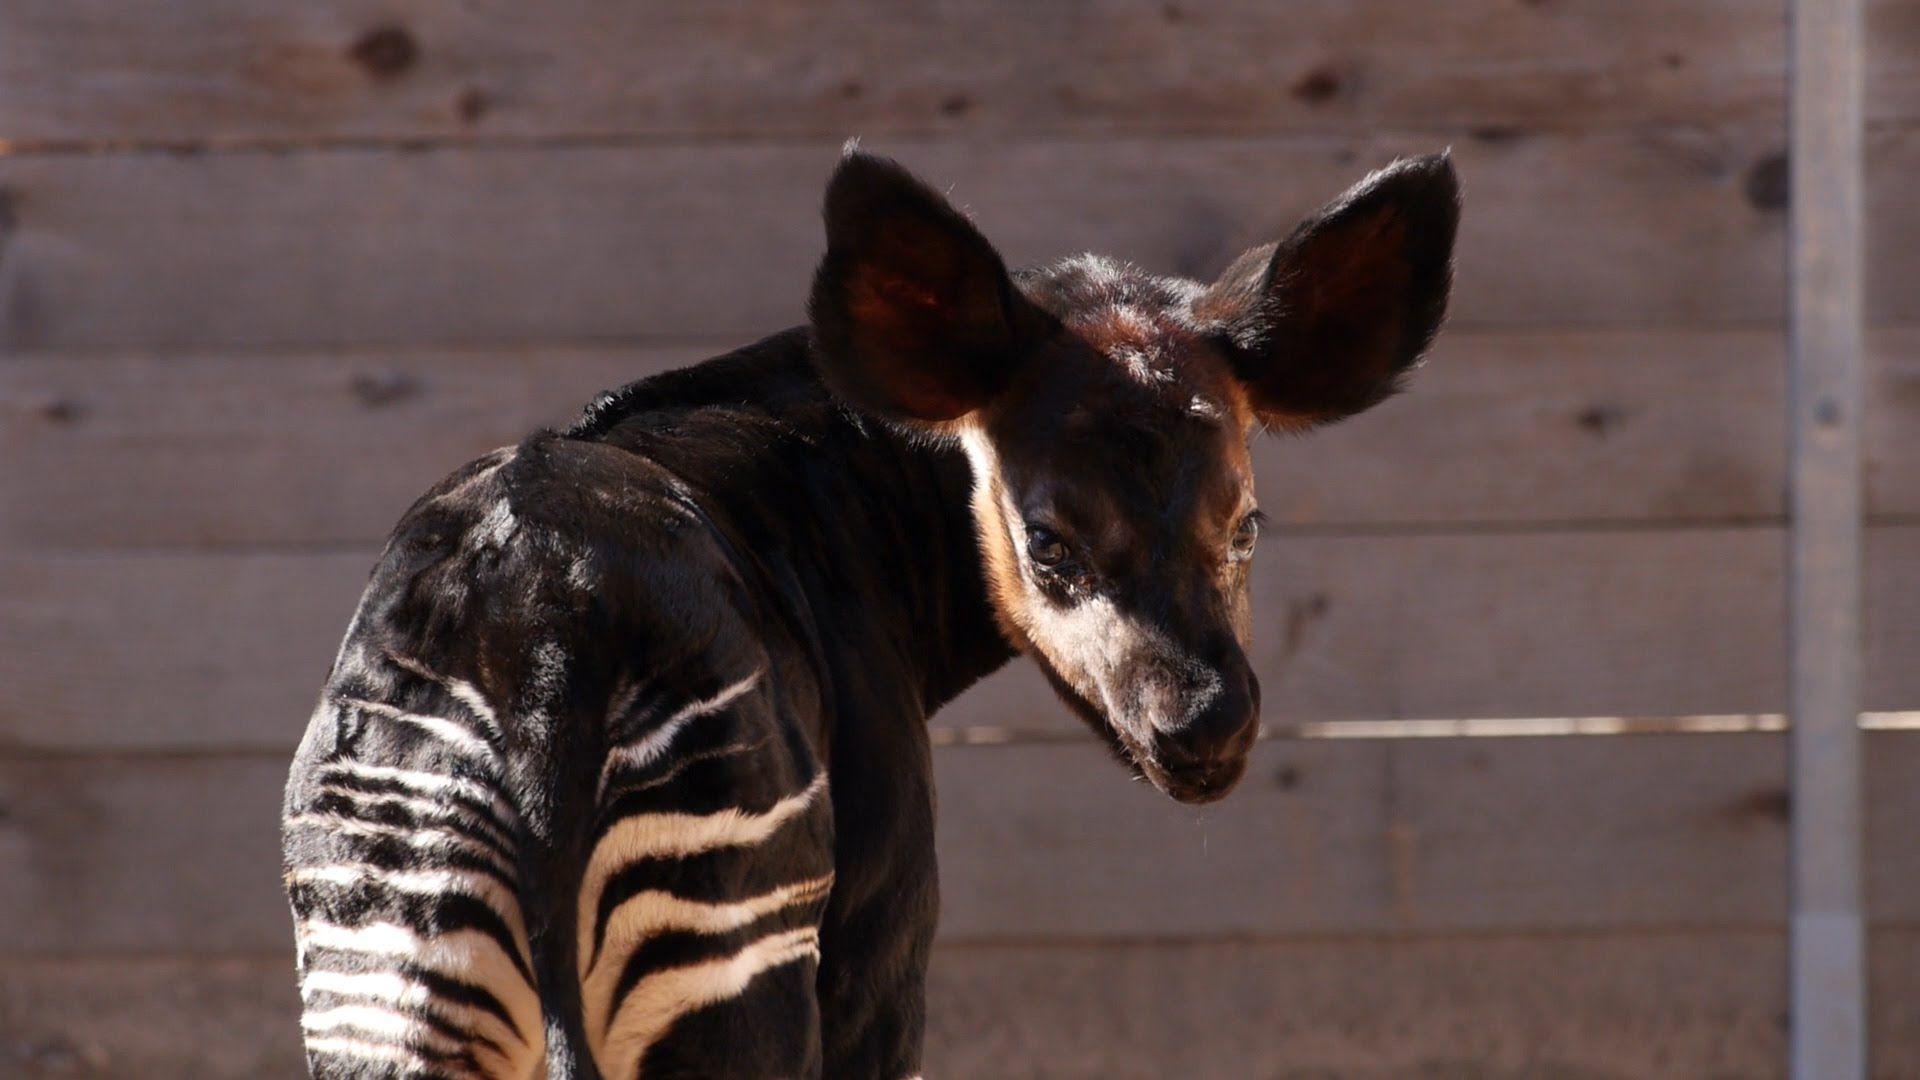 Baby Okapi Born at the Zoo!